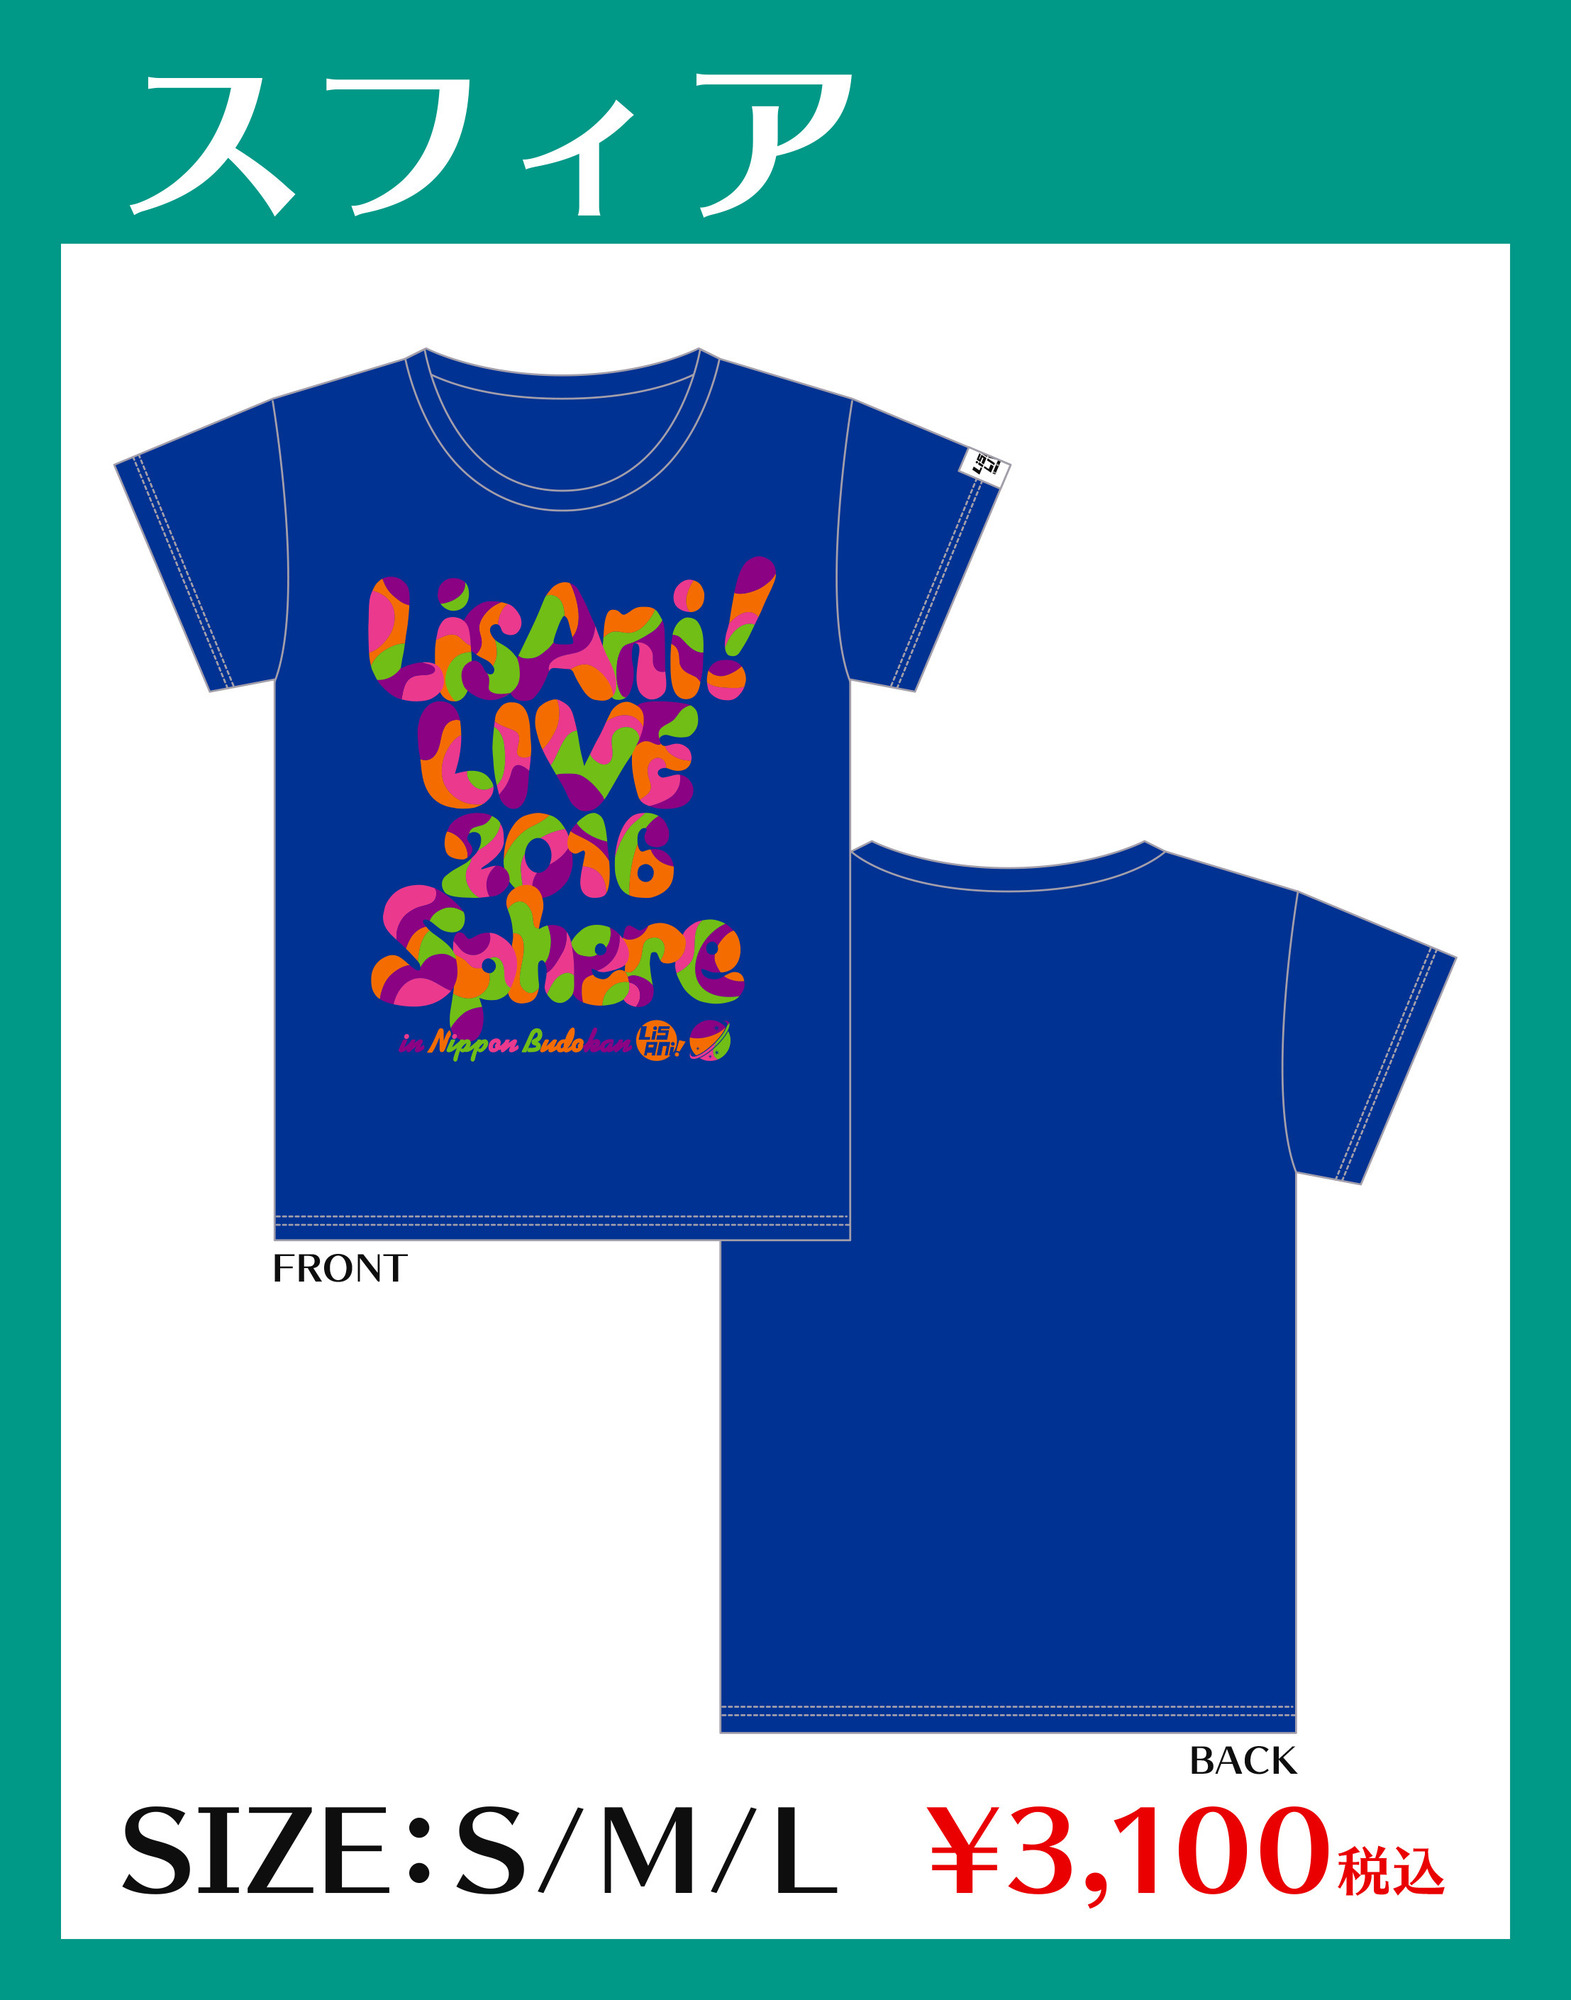 スフィア リスアニ Live 16 公式コラボtシャツ オリジナルグッズ販売決定 Sphere Portal Square スフィアポータルスクエア